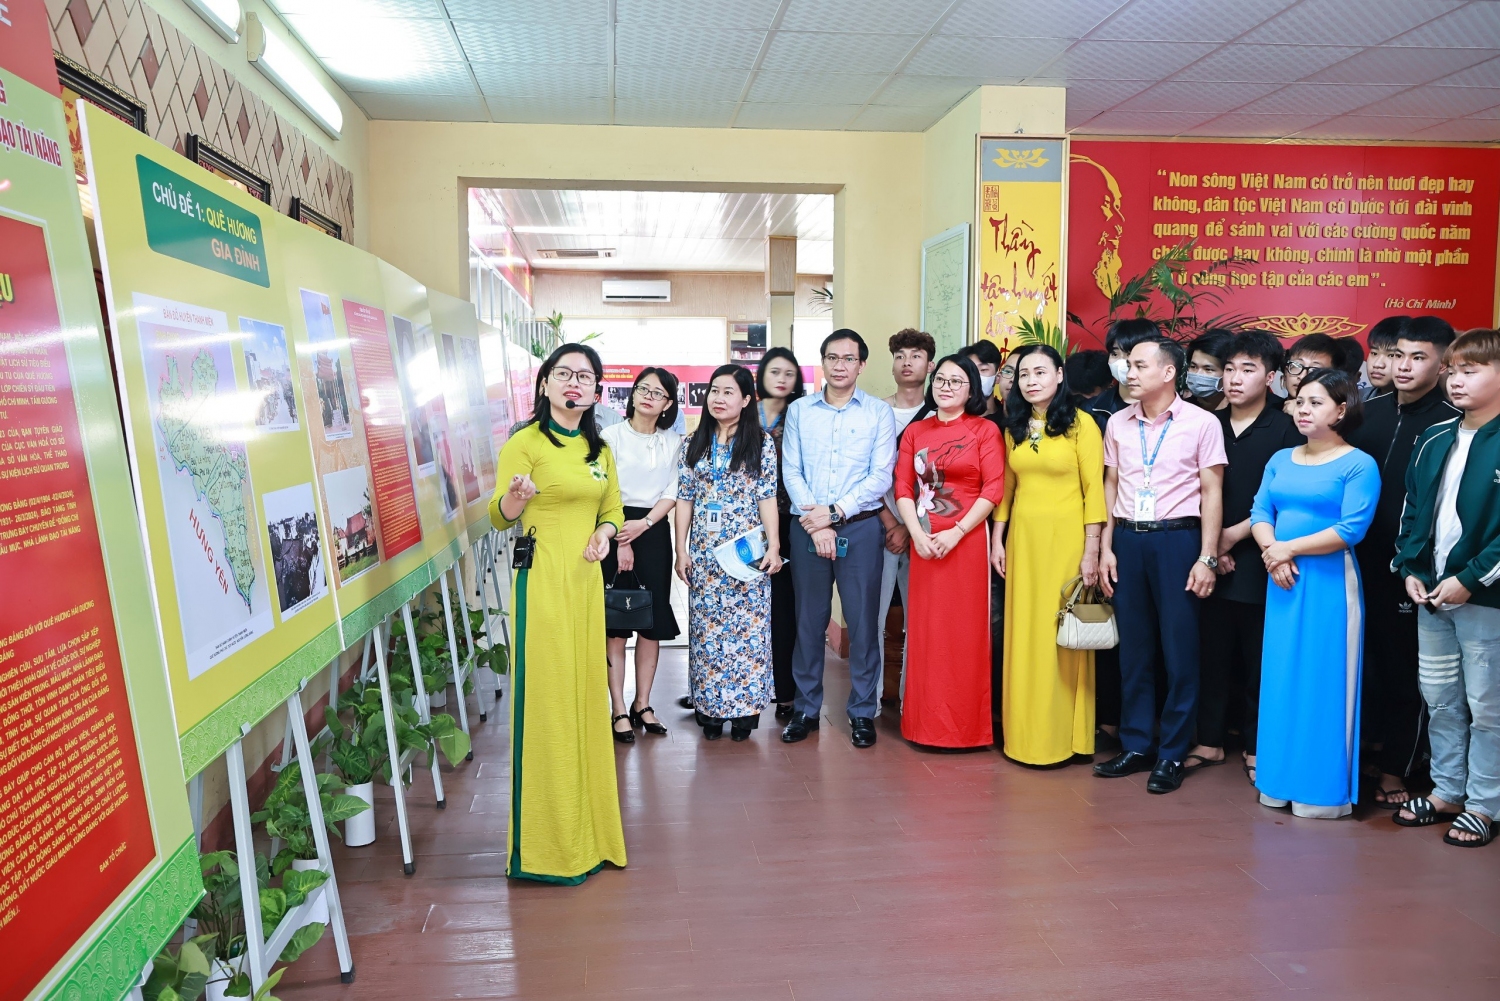 Khai mạc trưng bày chuyên đề "Đồng chí Nguyễn Lương Bằng - Người cộng sản kiên trung, mẫu mực, nhà lãnh đạo tài năng của Đảng và cách mạng Việt Nam"